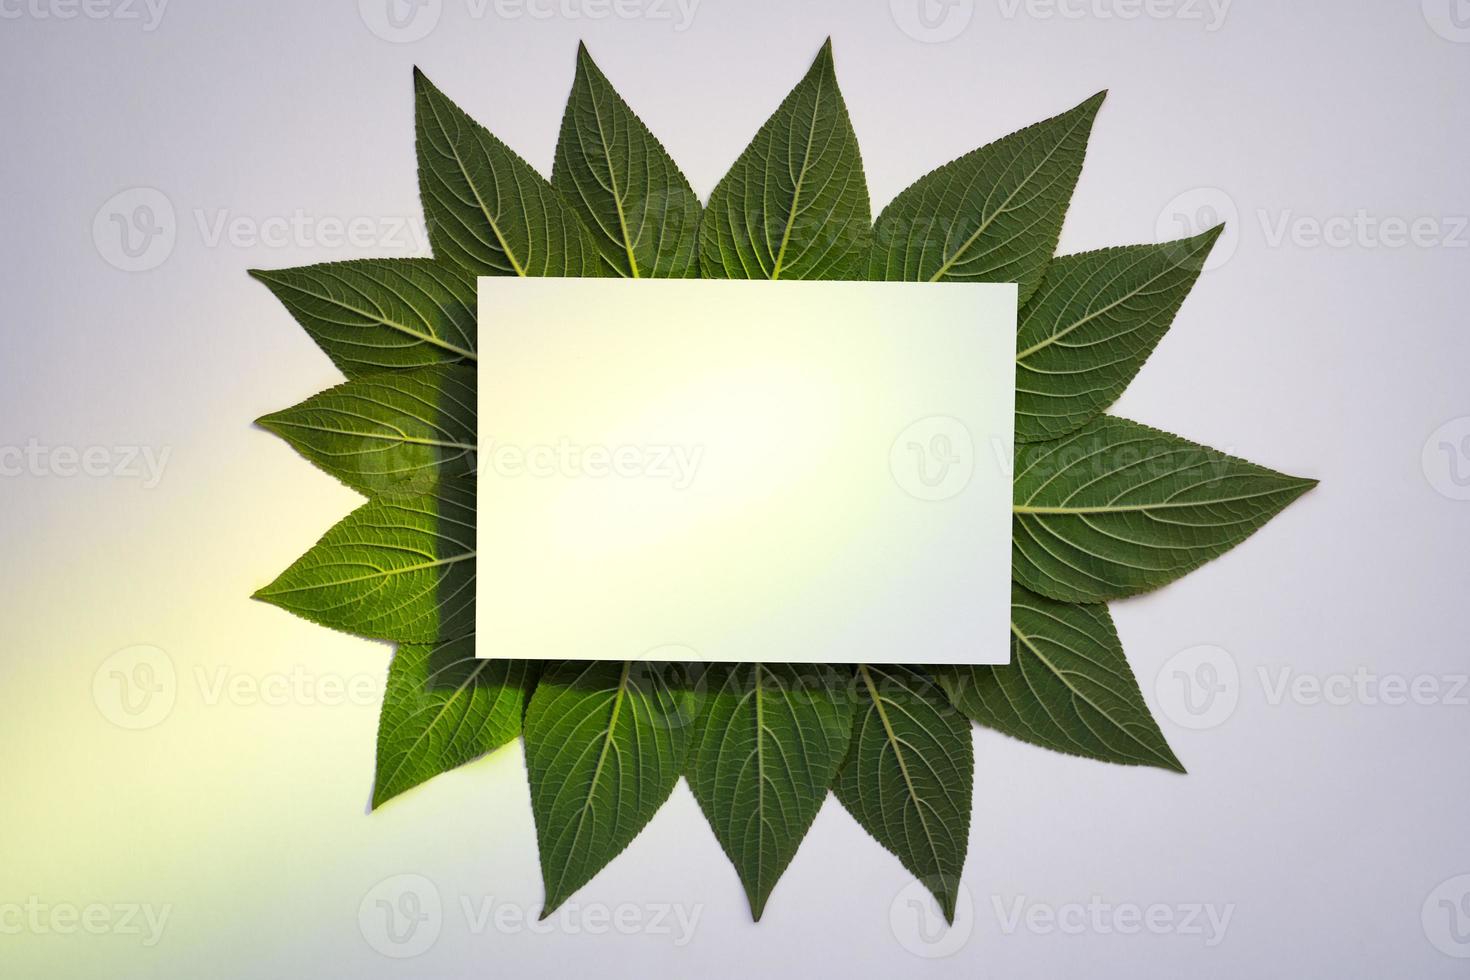 padrão de folha verde criativa com papel branco e holofotes verdes foto